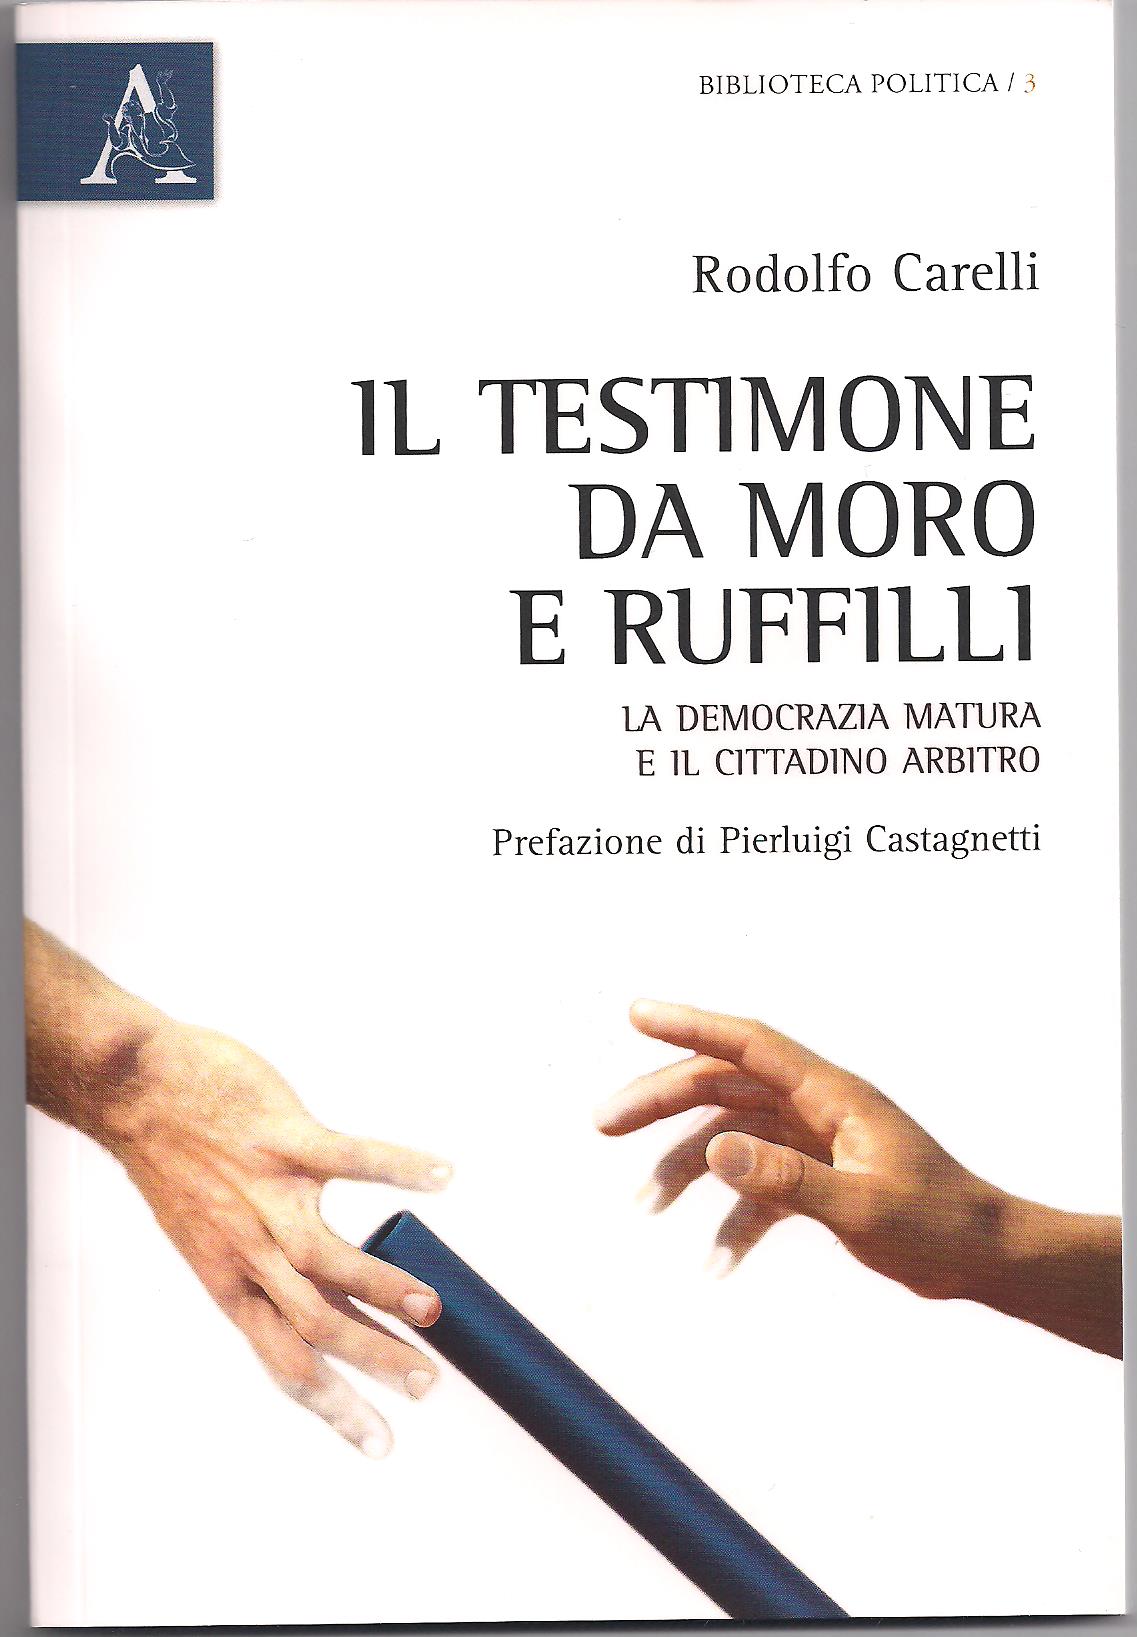 Libri: “Il testimone da Moro a Ruffilli. Democrazia matura e cittadino arbitro”  di Rodolfo Carelli